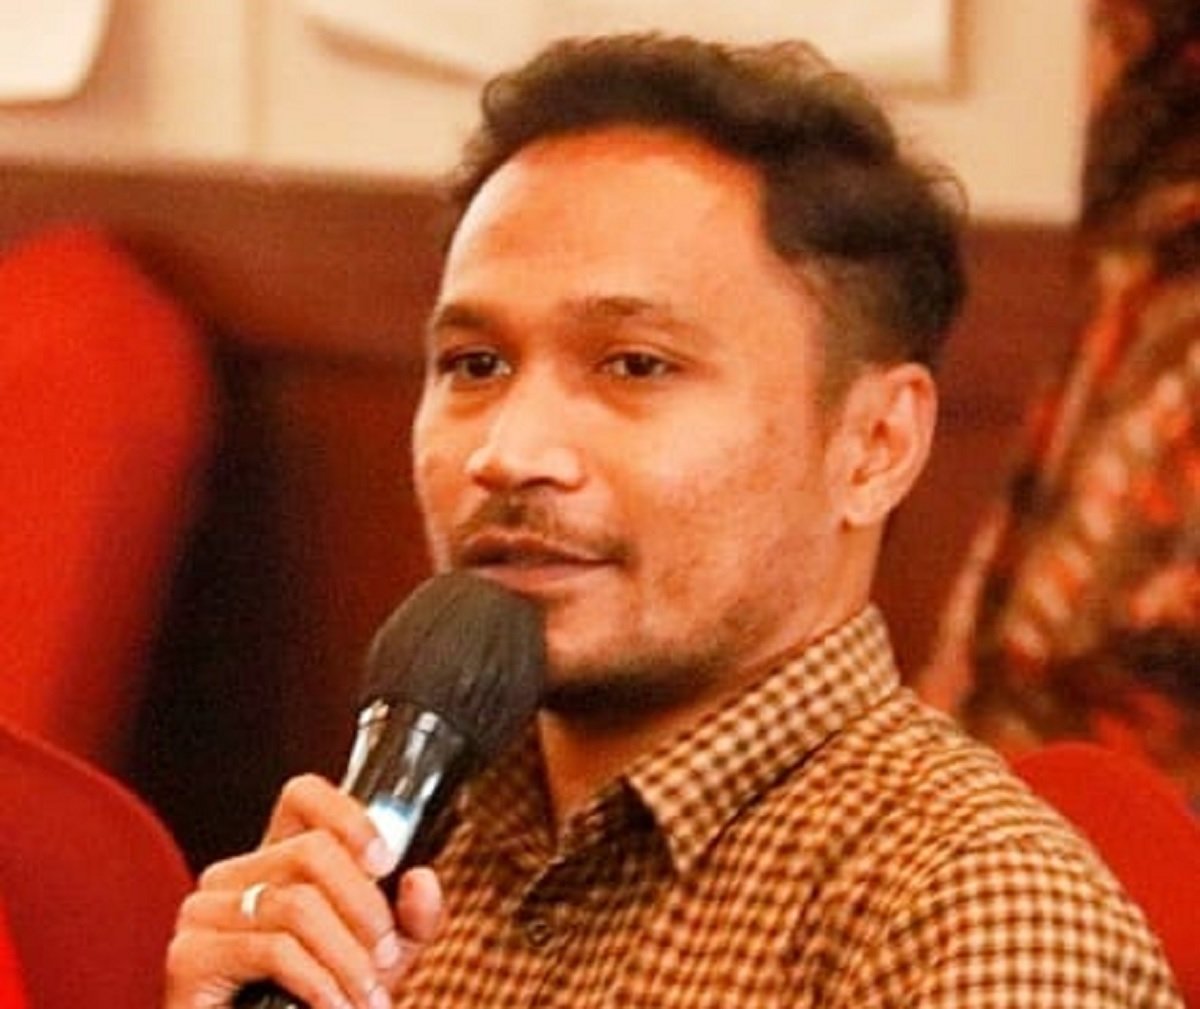 Muhammad Kashai Ramdhani Pelupessy